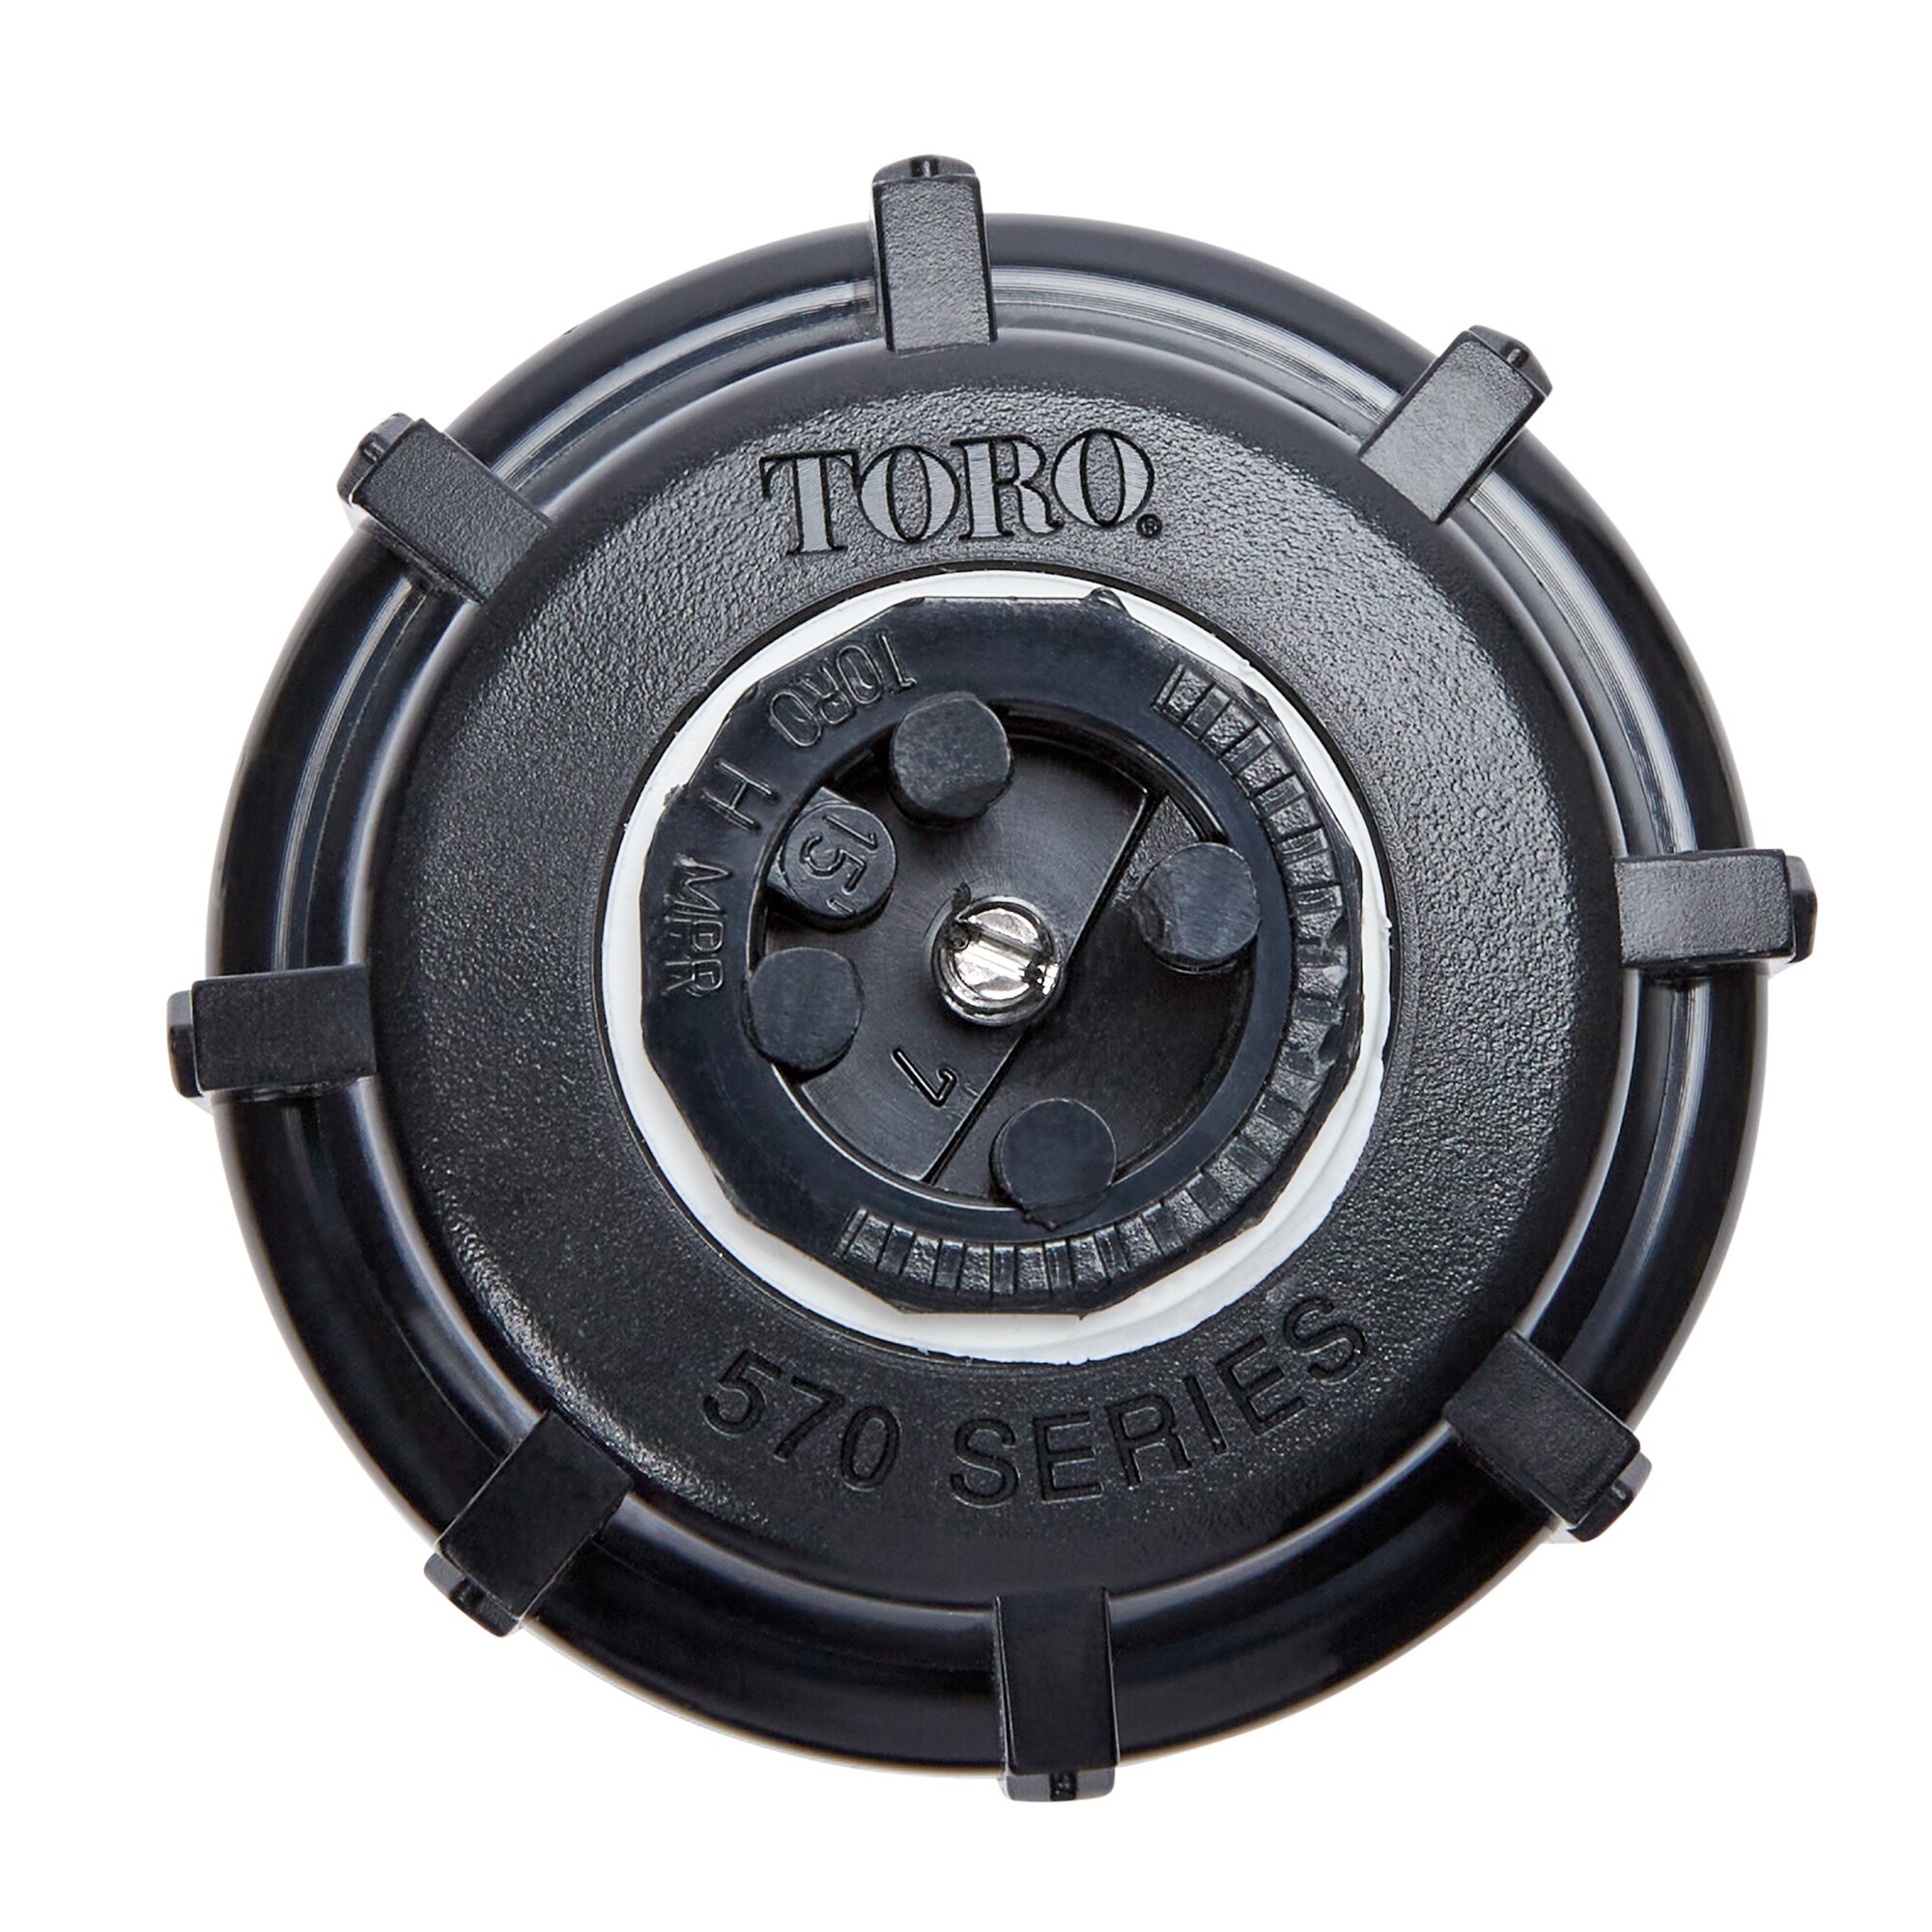 Toro 53816 570Z Pro Series Black Plastic Half-Circle Pop-Up Sprinkler 3 H in. 